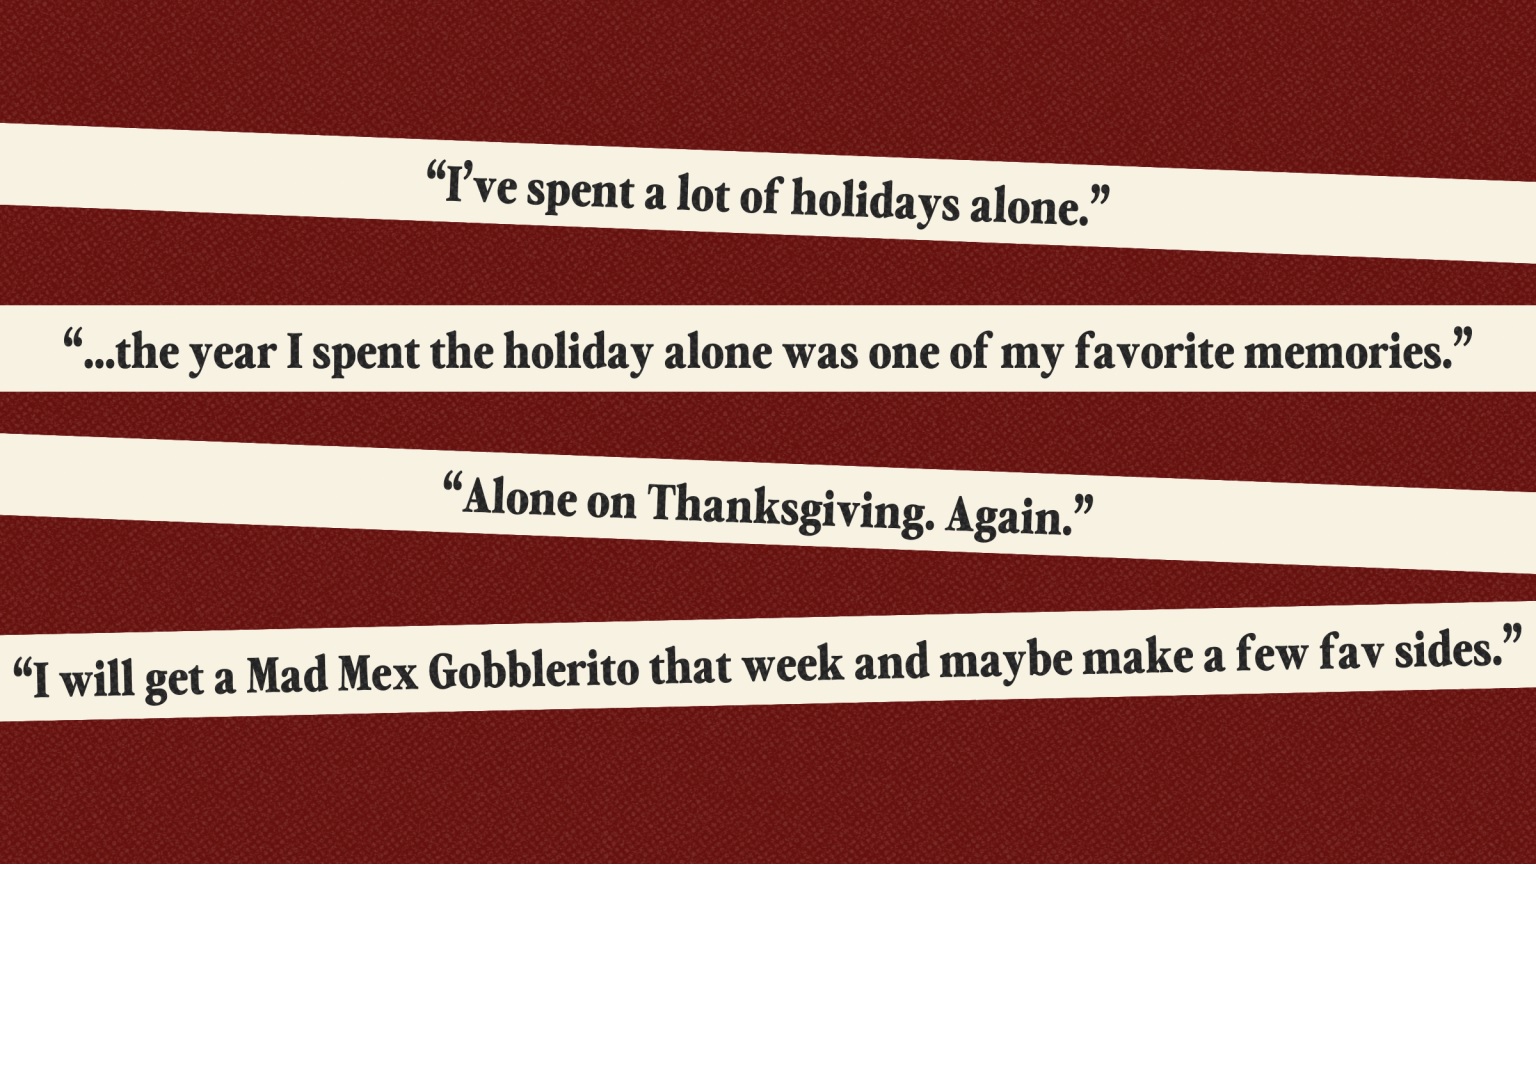 匹兹堡人分享独自度过感恩节的喜悦和孤独经历